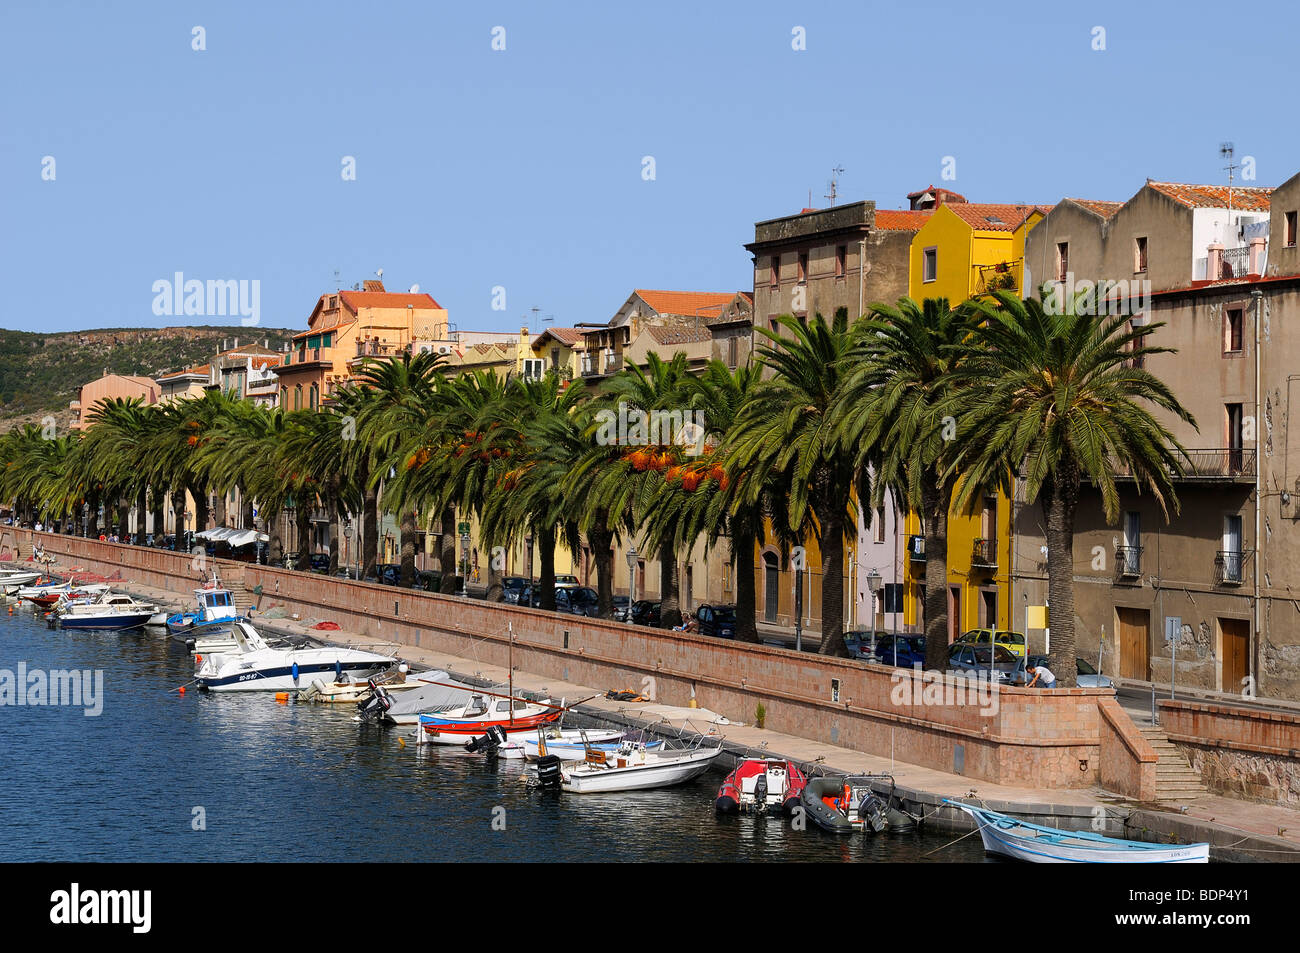 Barche sul fiume Temo e il centro storico di Bosa, palme lungo la promenade, Bosa, Oristano, Sardegna, Italia, Foto Stock